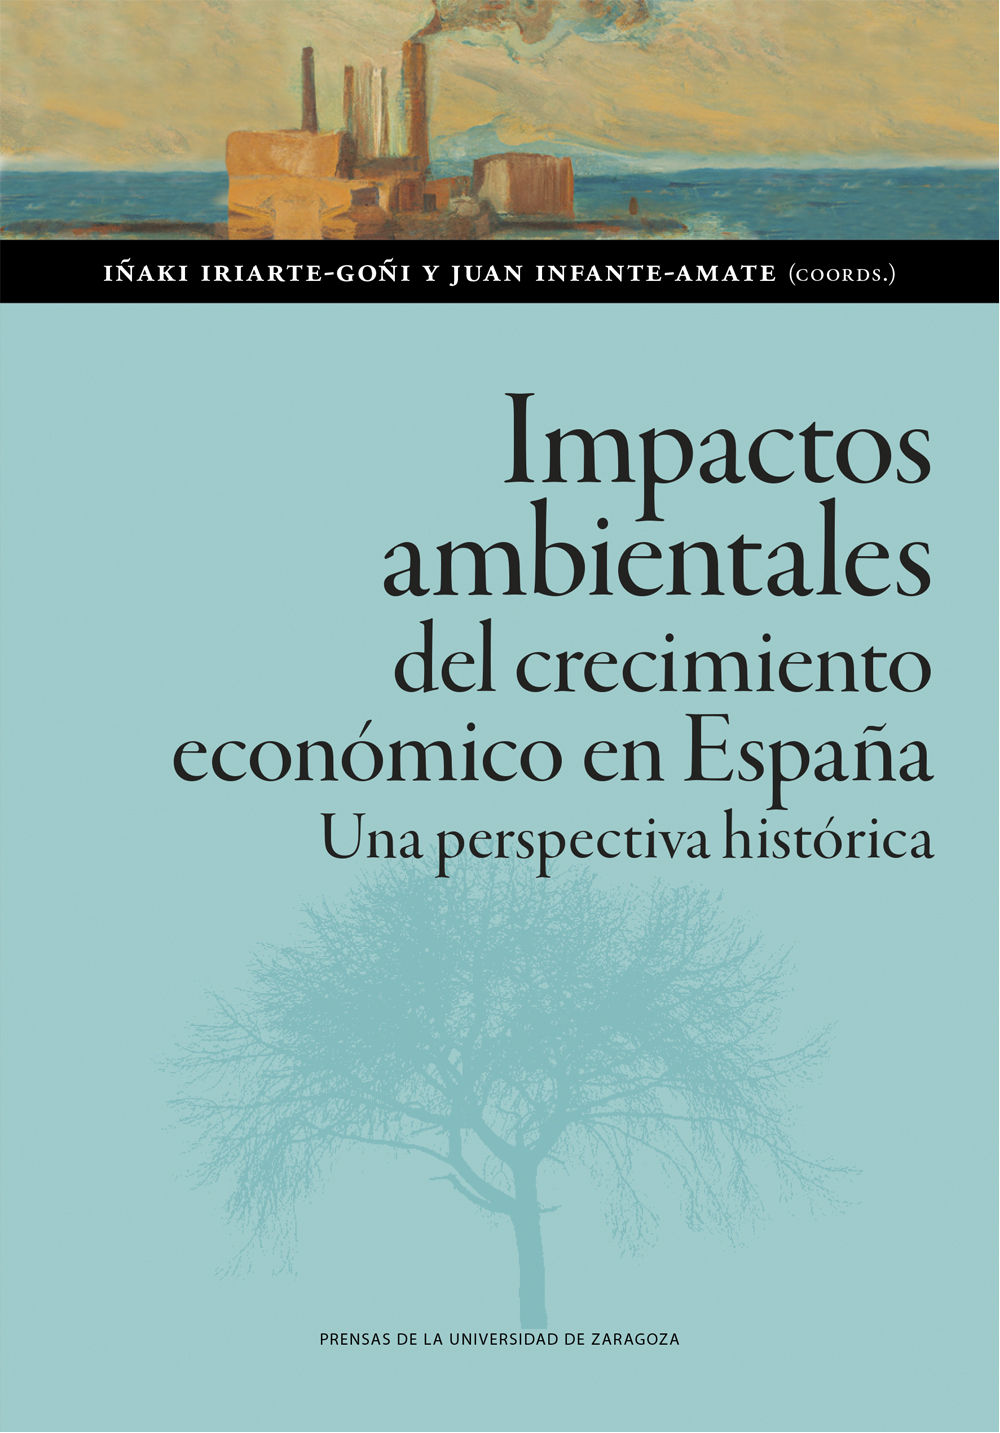 IMPACTOS-AMBIENTALES-DEL-CRECIMIENTO-ECONOMICO-EN-ESPANA.jpg